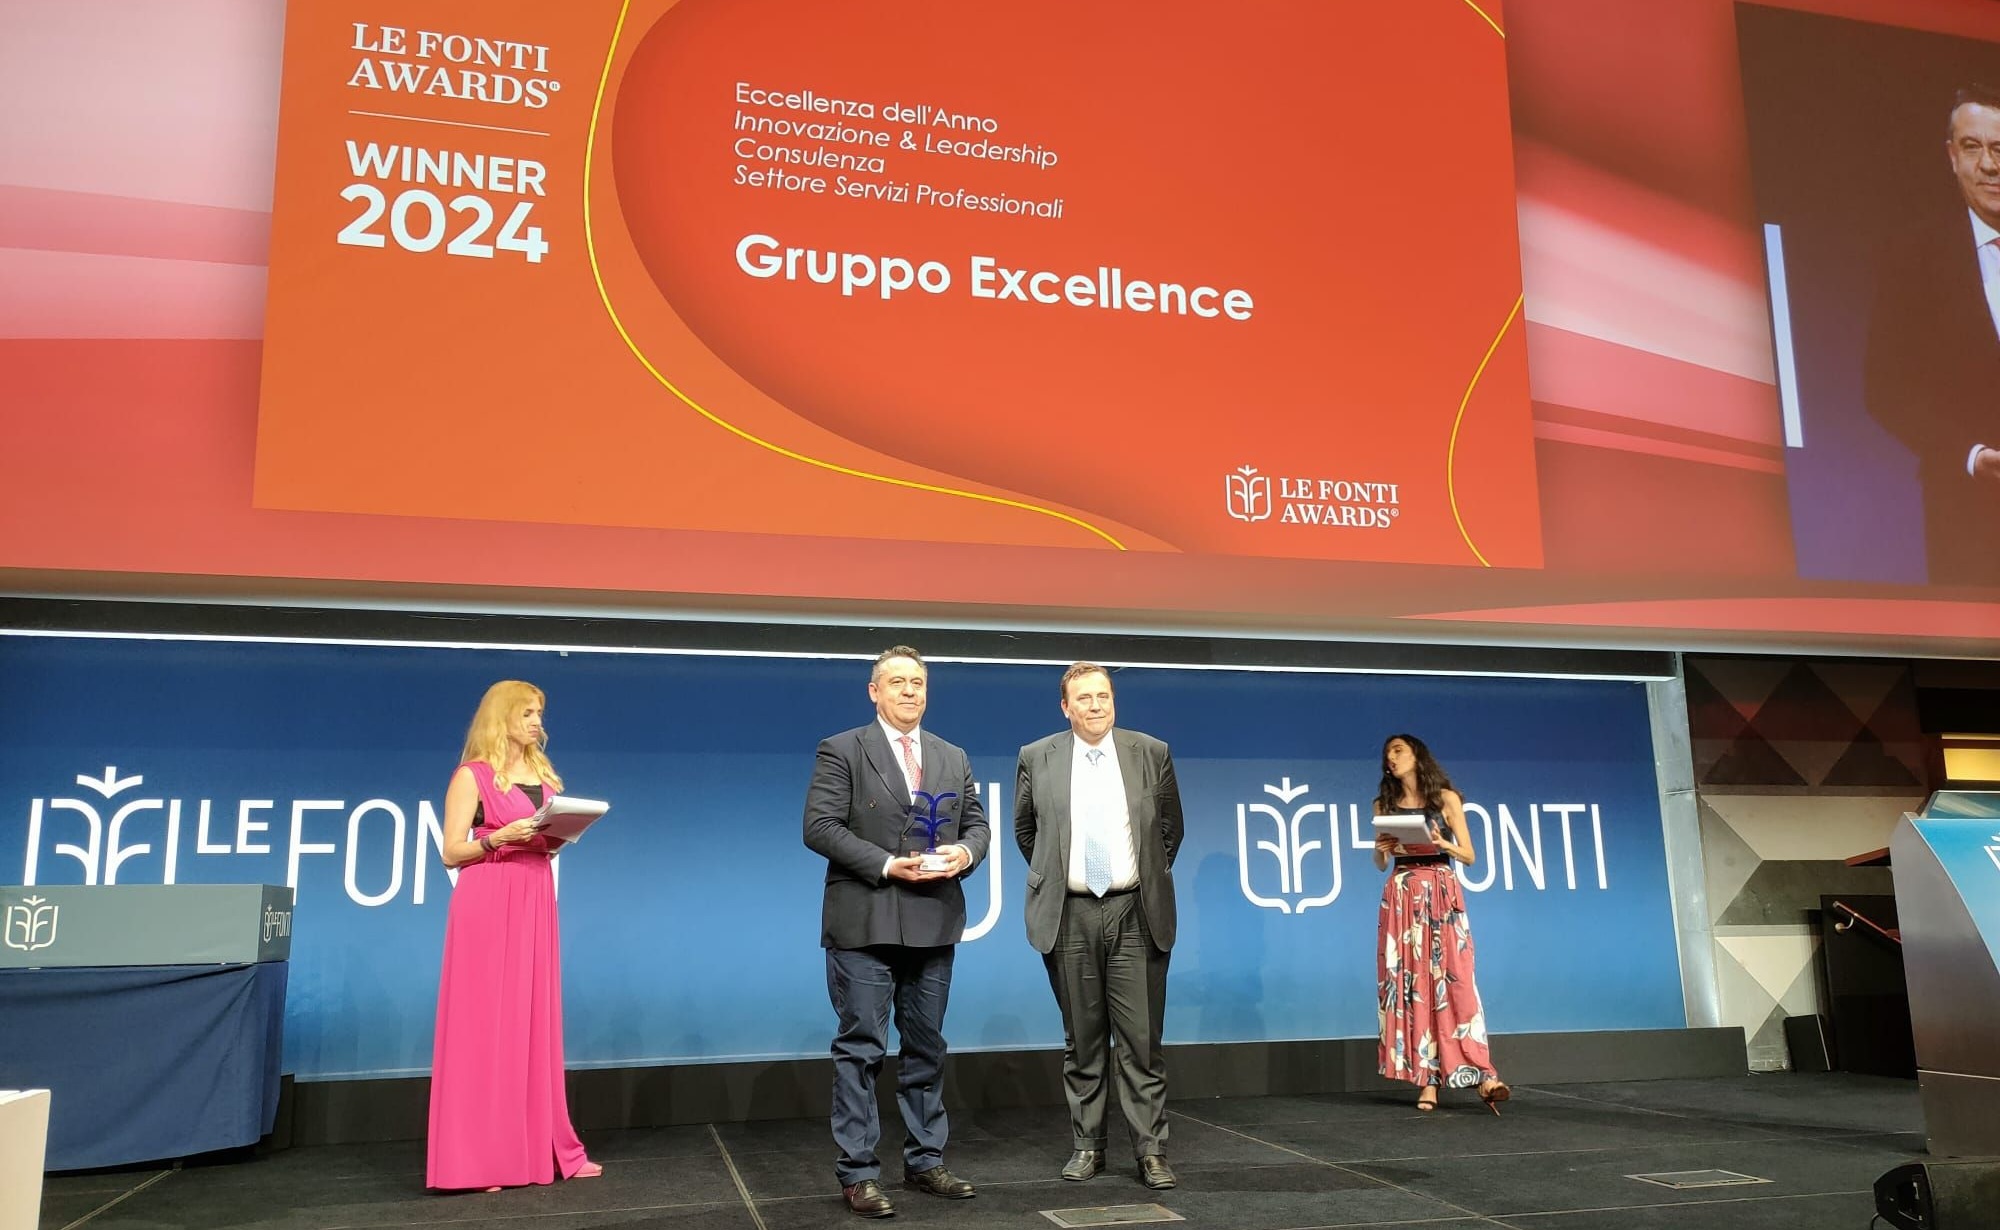 Le Fonti Awards, il Gruppo Excellence vince nella categoria “Eccellenza dell’Anno -Innovazione & Leadership “